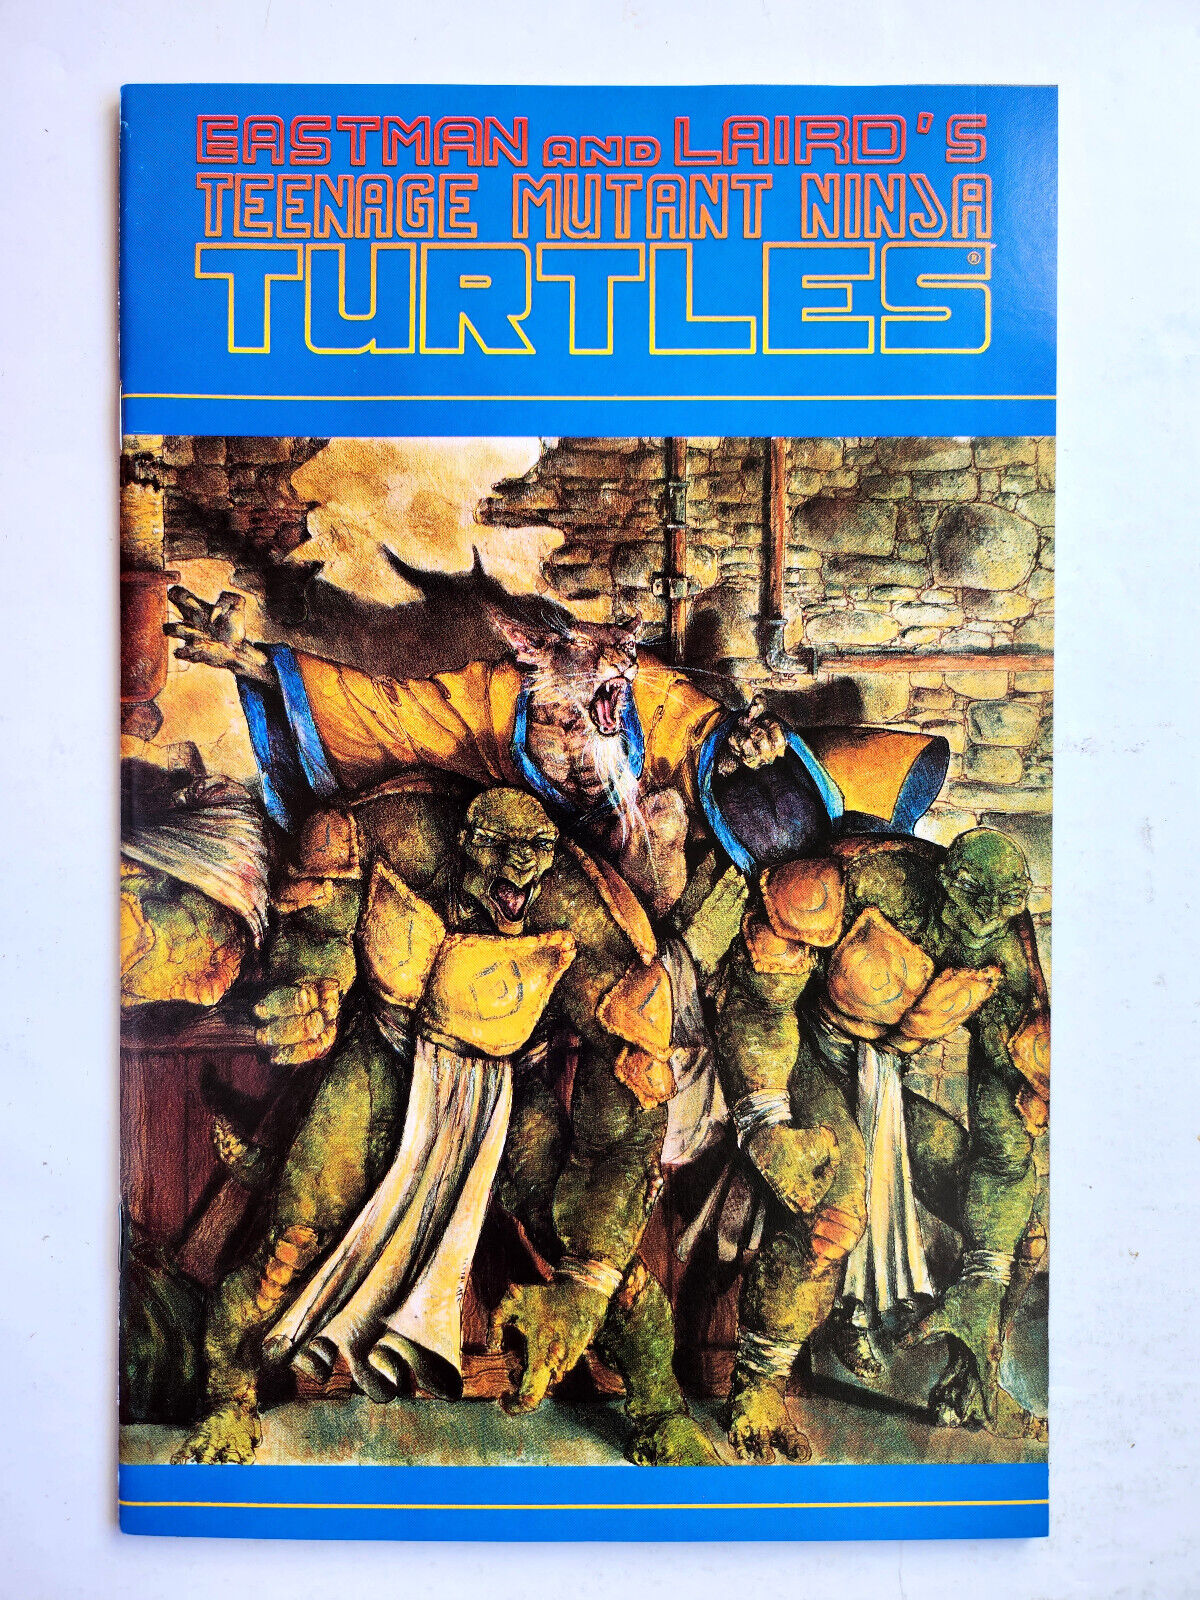 Teenage Mutant Ninja Turtles #35 (1991 Mirage) VF